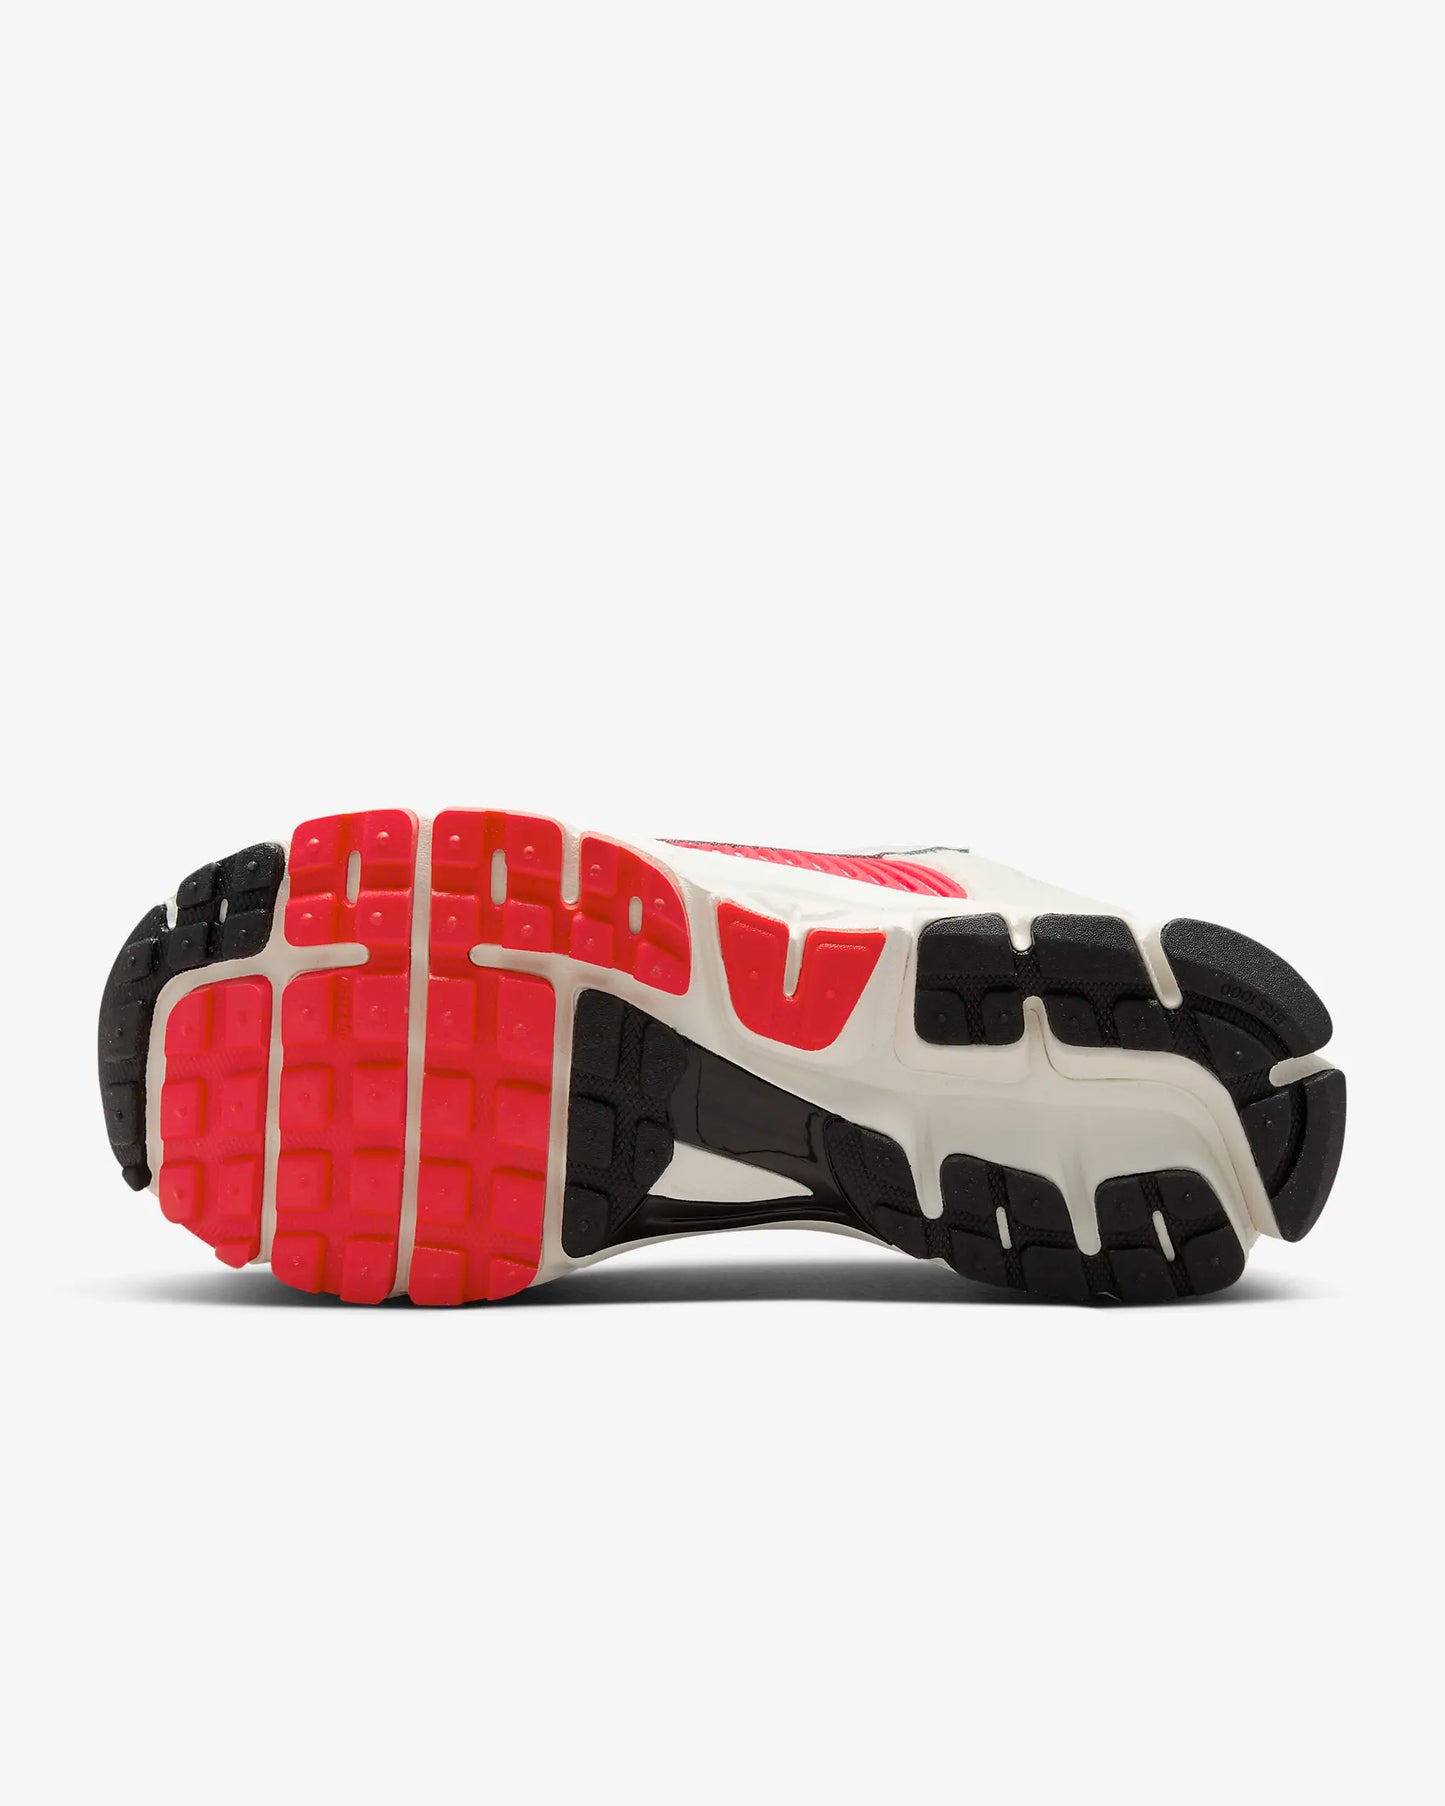 Nike "Vomero 5" W - Sail / Multi-Color / Siren Red / Black